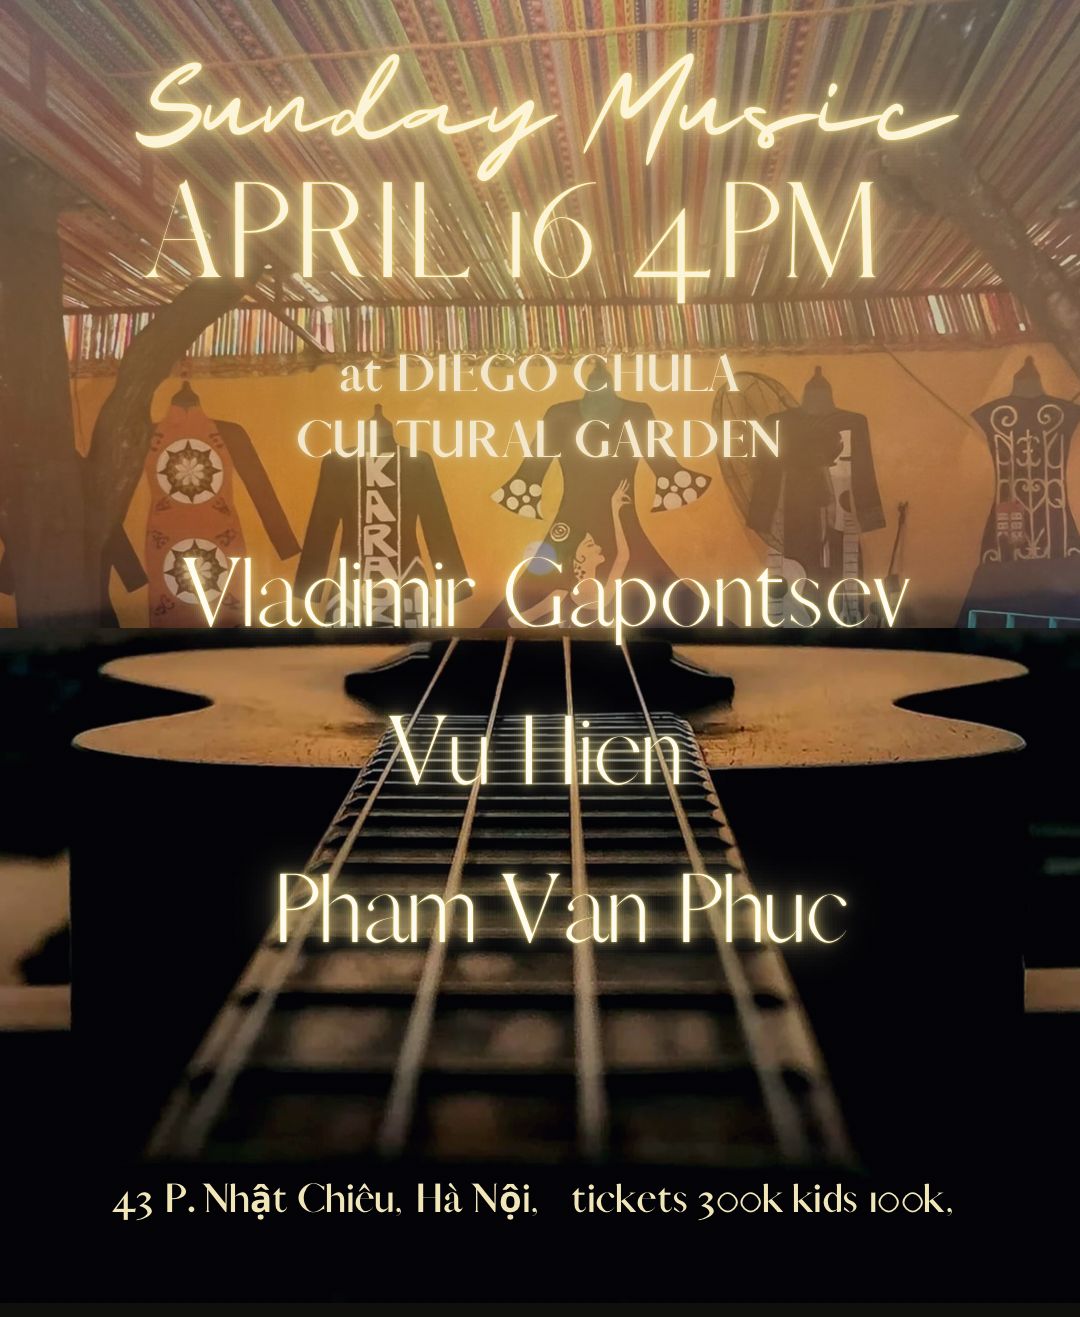 Sunday April 16th "Vladimir Gapontsev, Vũ Hiển and Phạm Văn Phúc"